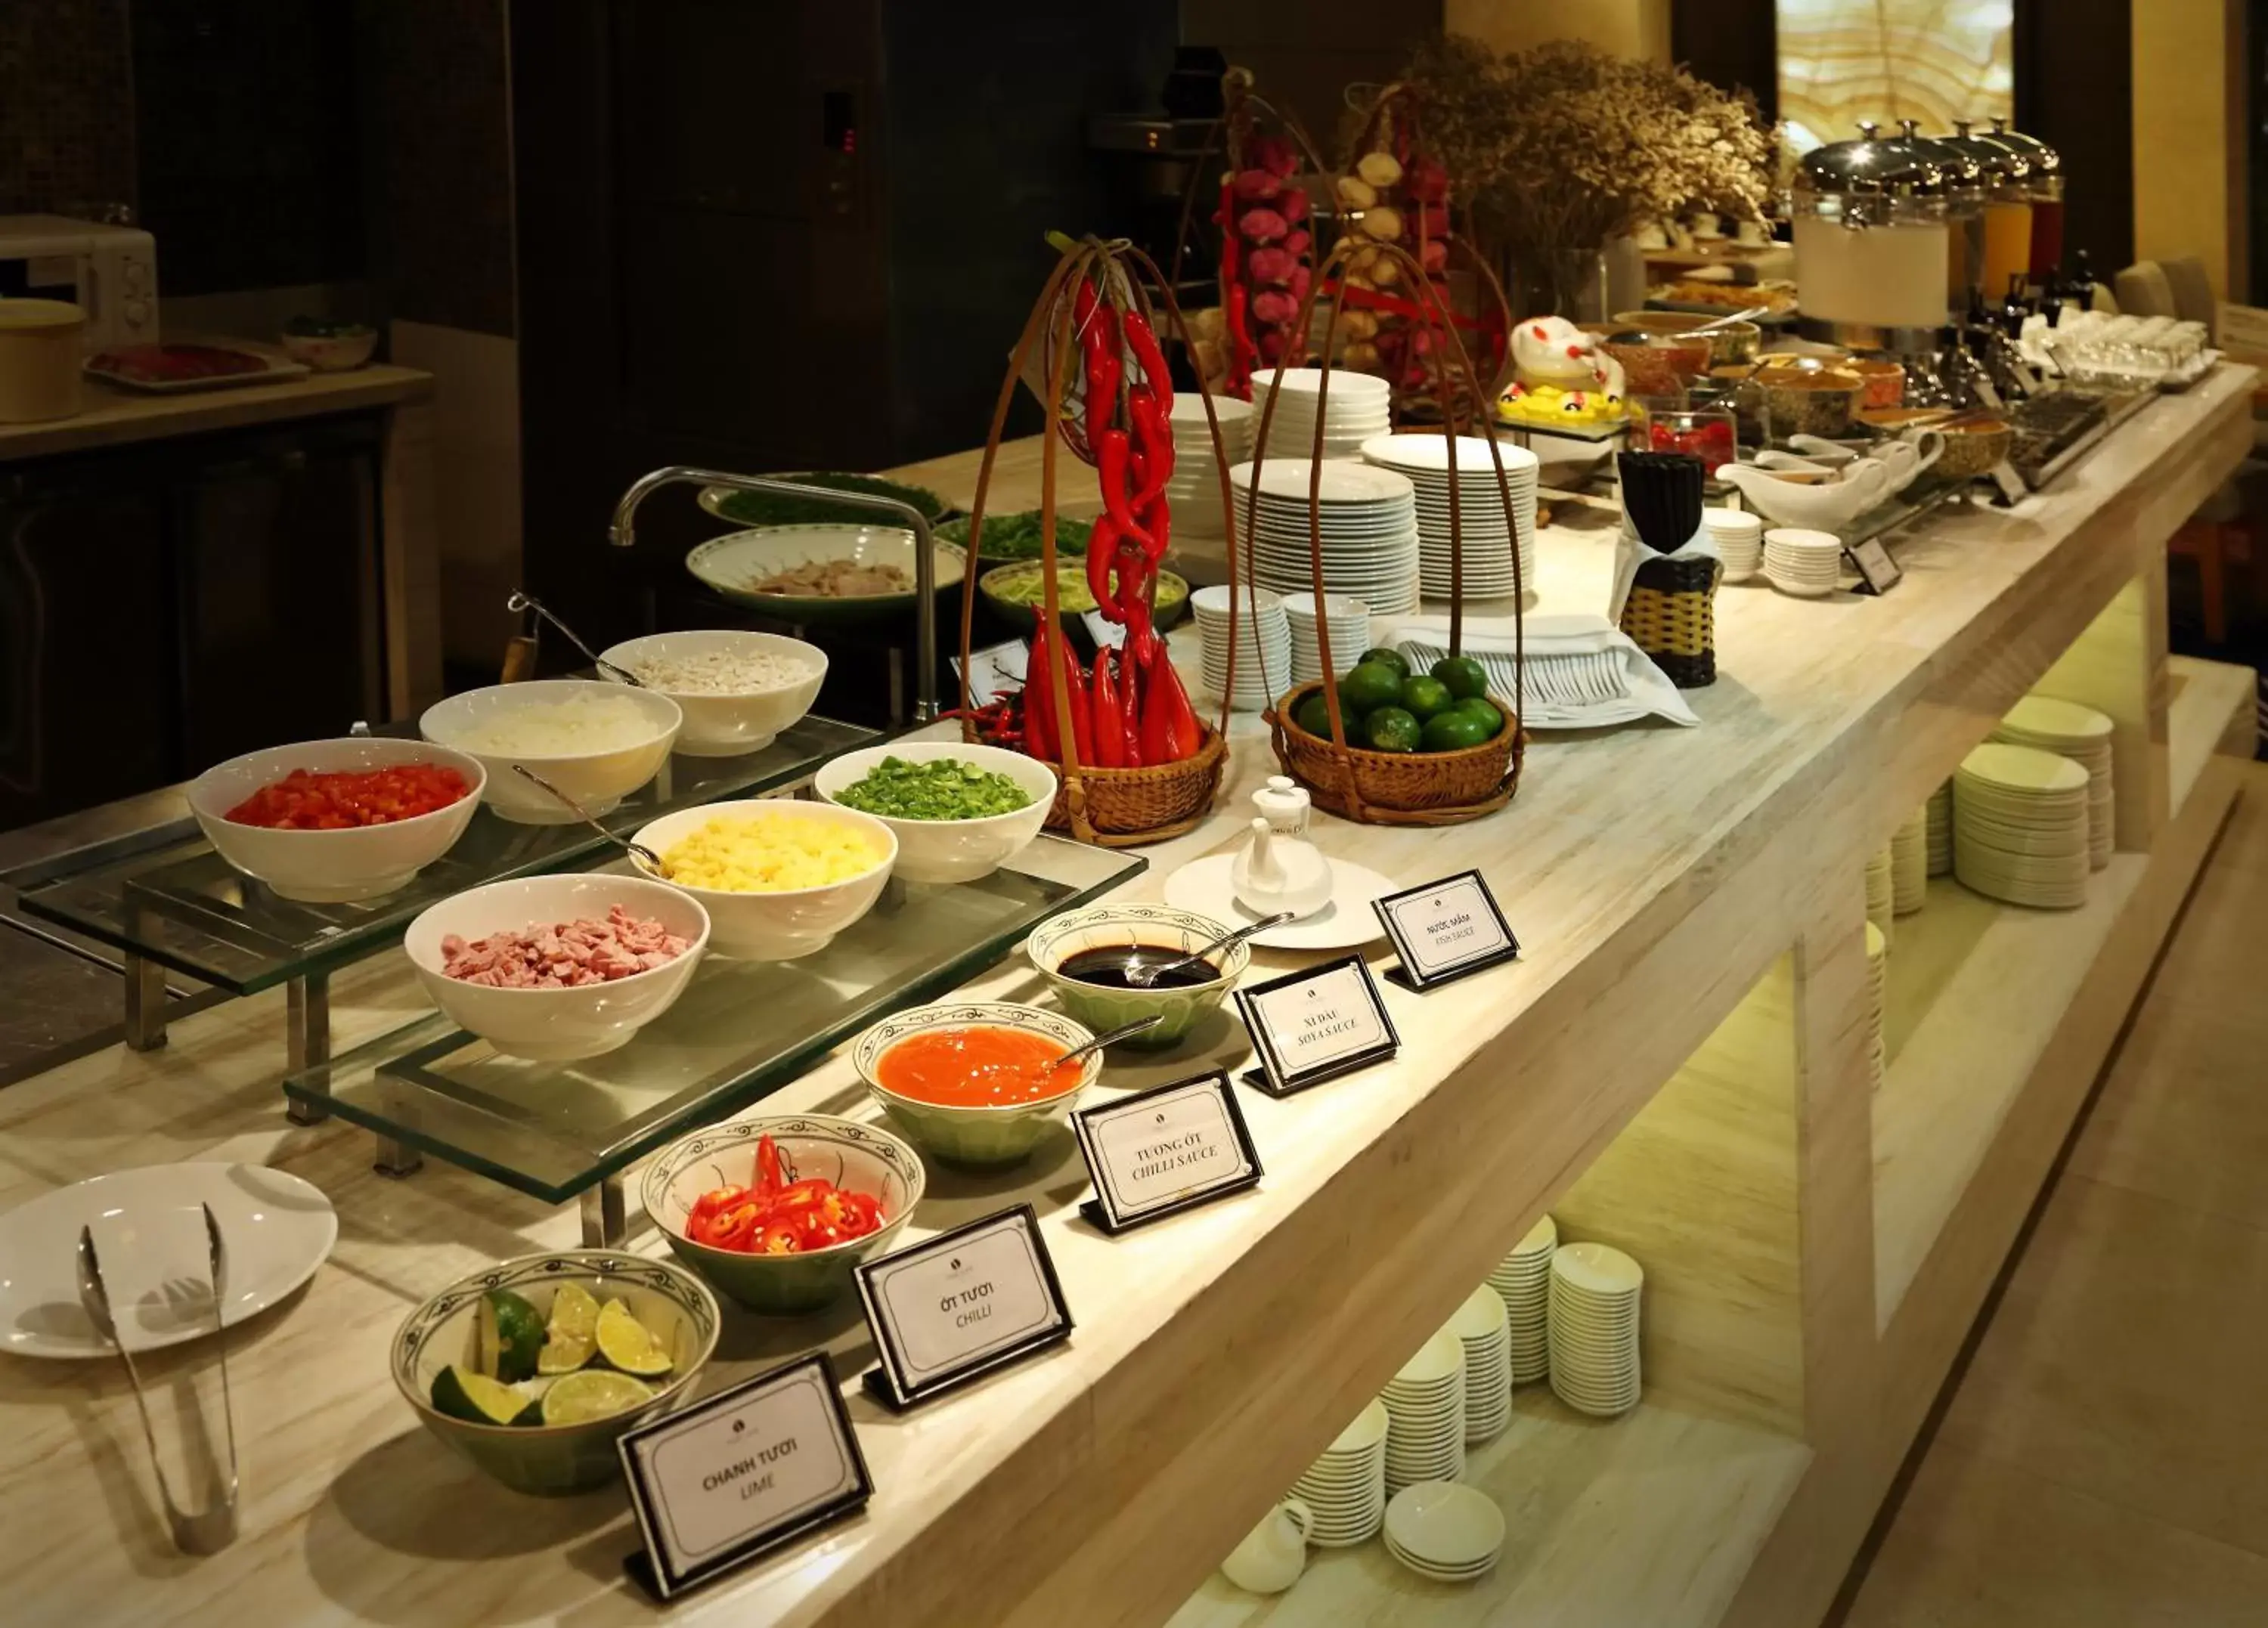 Buffet breakfast in The Ann Hanoi Hotel